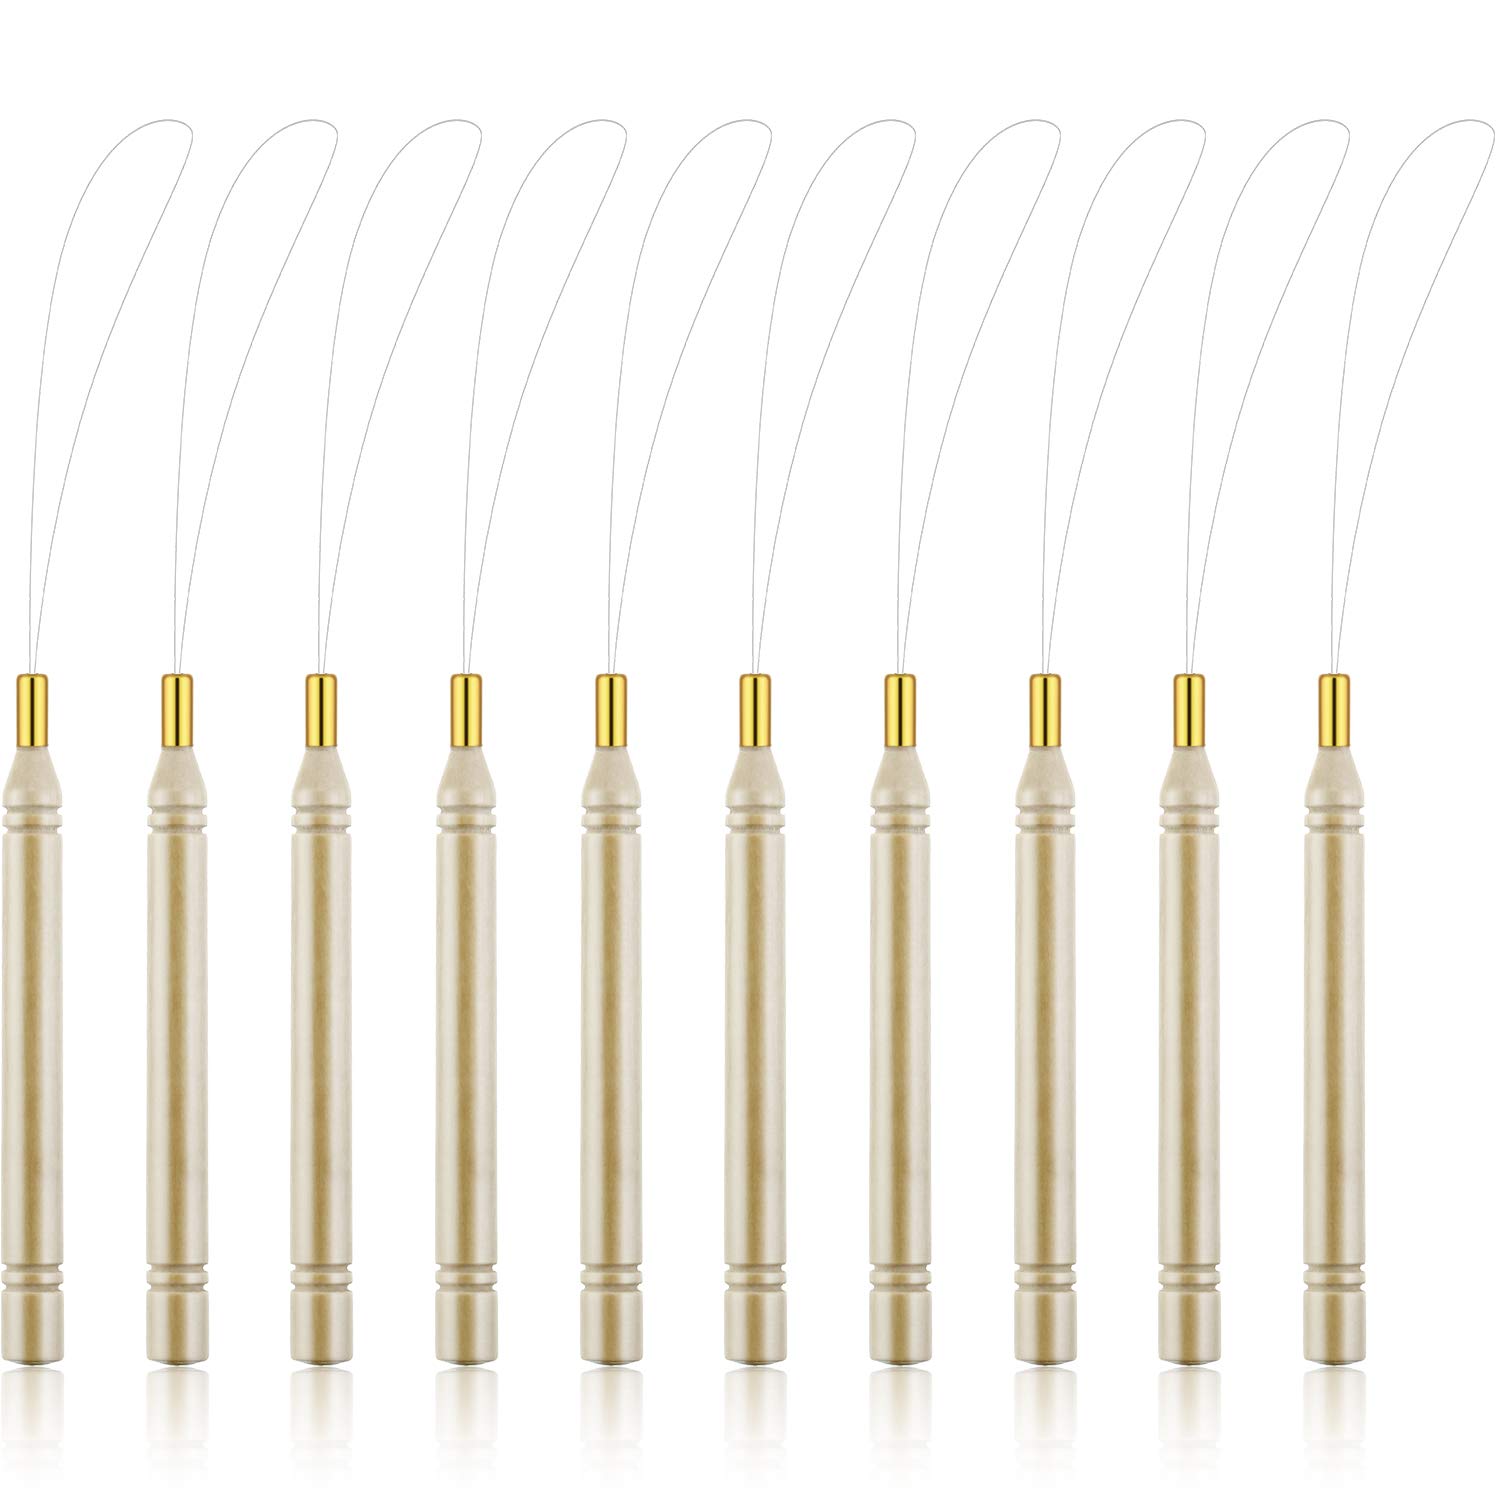 10 Pack Wooden Hair Extension Loop Needle Threader Pulling Hook